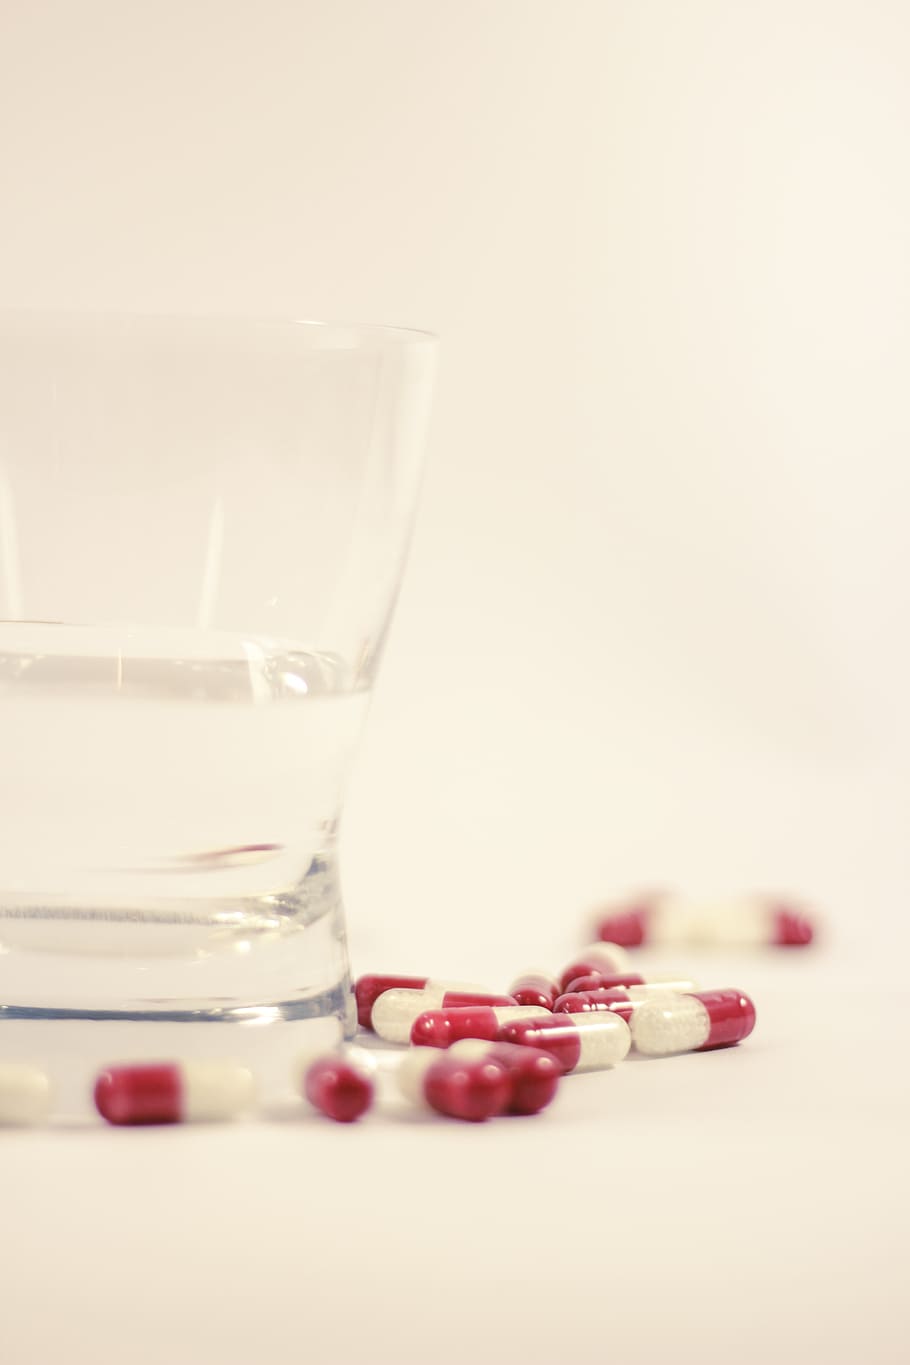 tablet obat, di samping, gelas minum, obat, pilek, dosis, penyakit, farmasi, farmakologis, plasebo